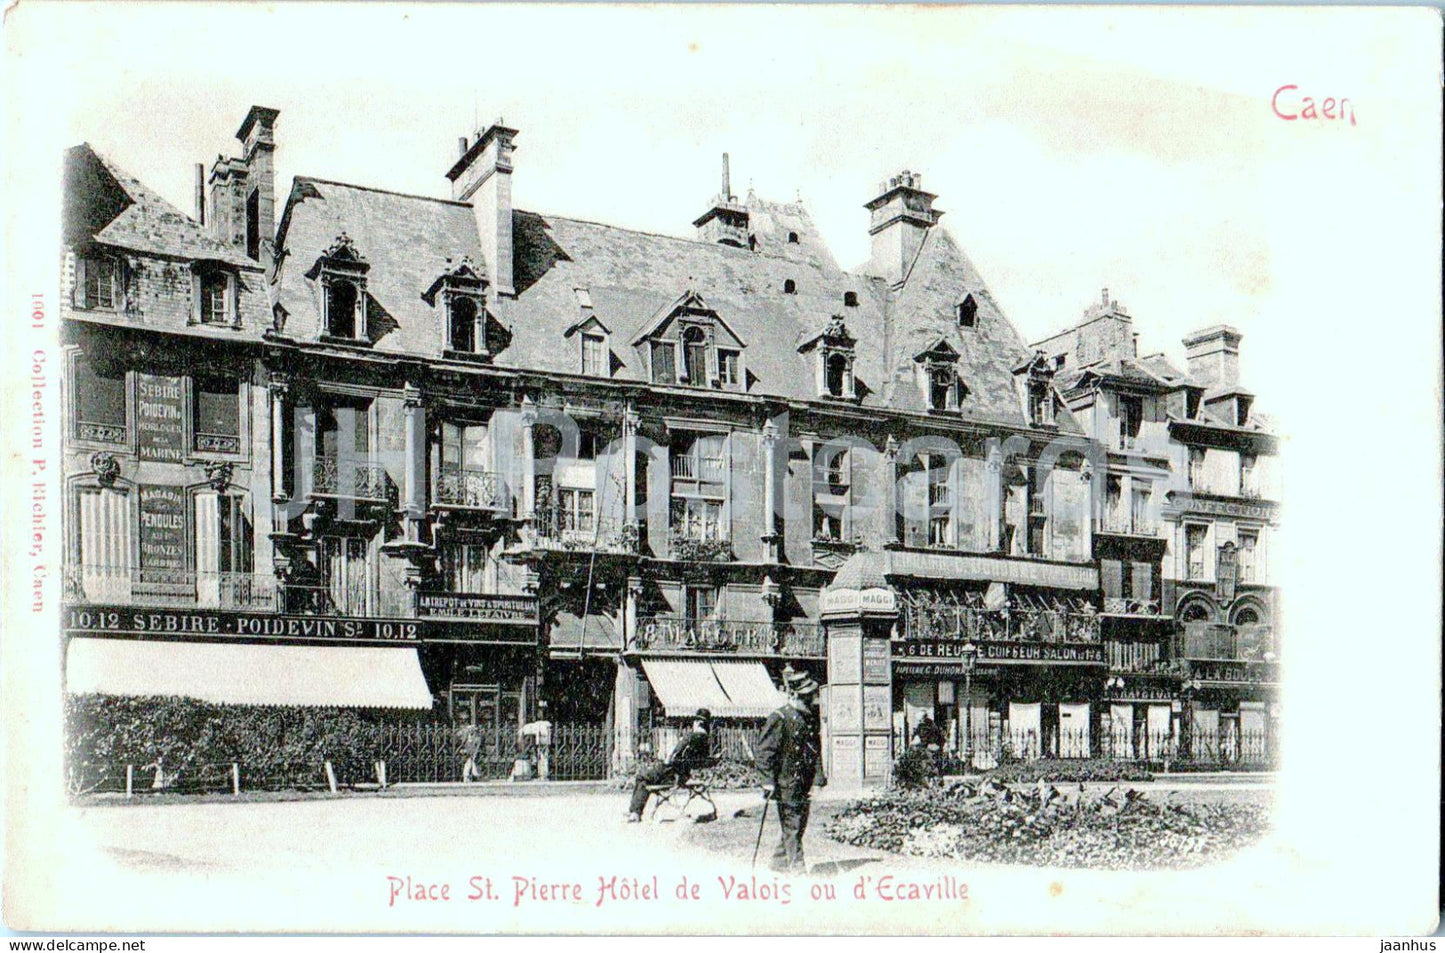 Caen - Place St Pierre Hotel de Valois ou d'Ecaville - old postcard - France - unused - JH Postcards